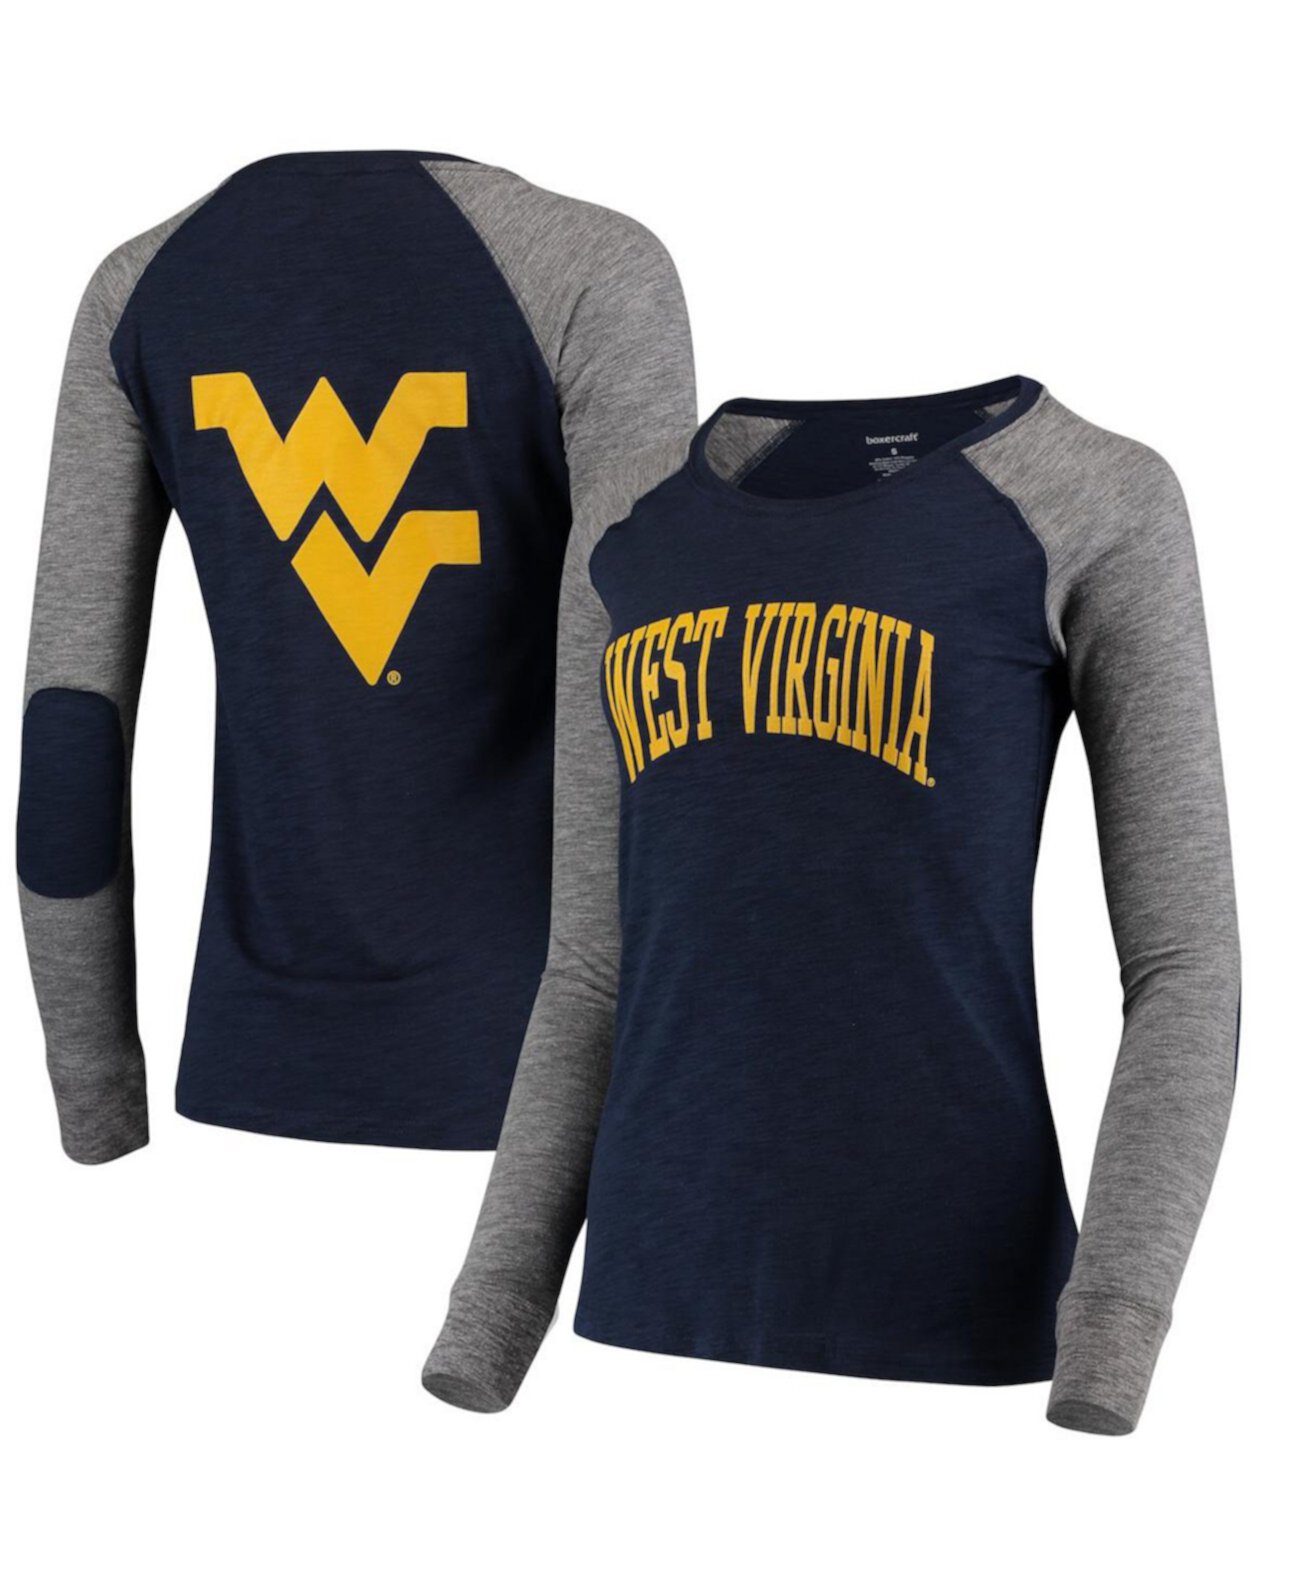 Женская темно-синяя, серая футболка с длинным рукавом и логотипом West Virginia Mountaineers Preppy Elbow Patch с двумя арками и логотипом Boxercraft